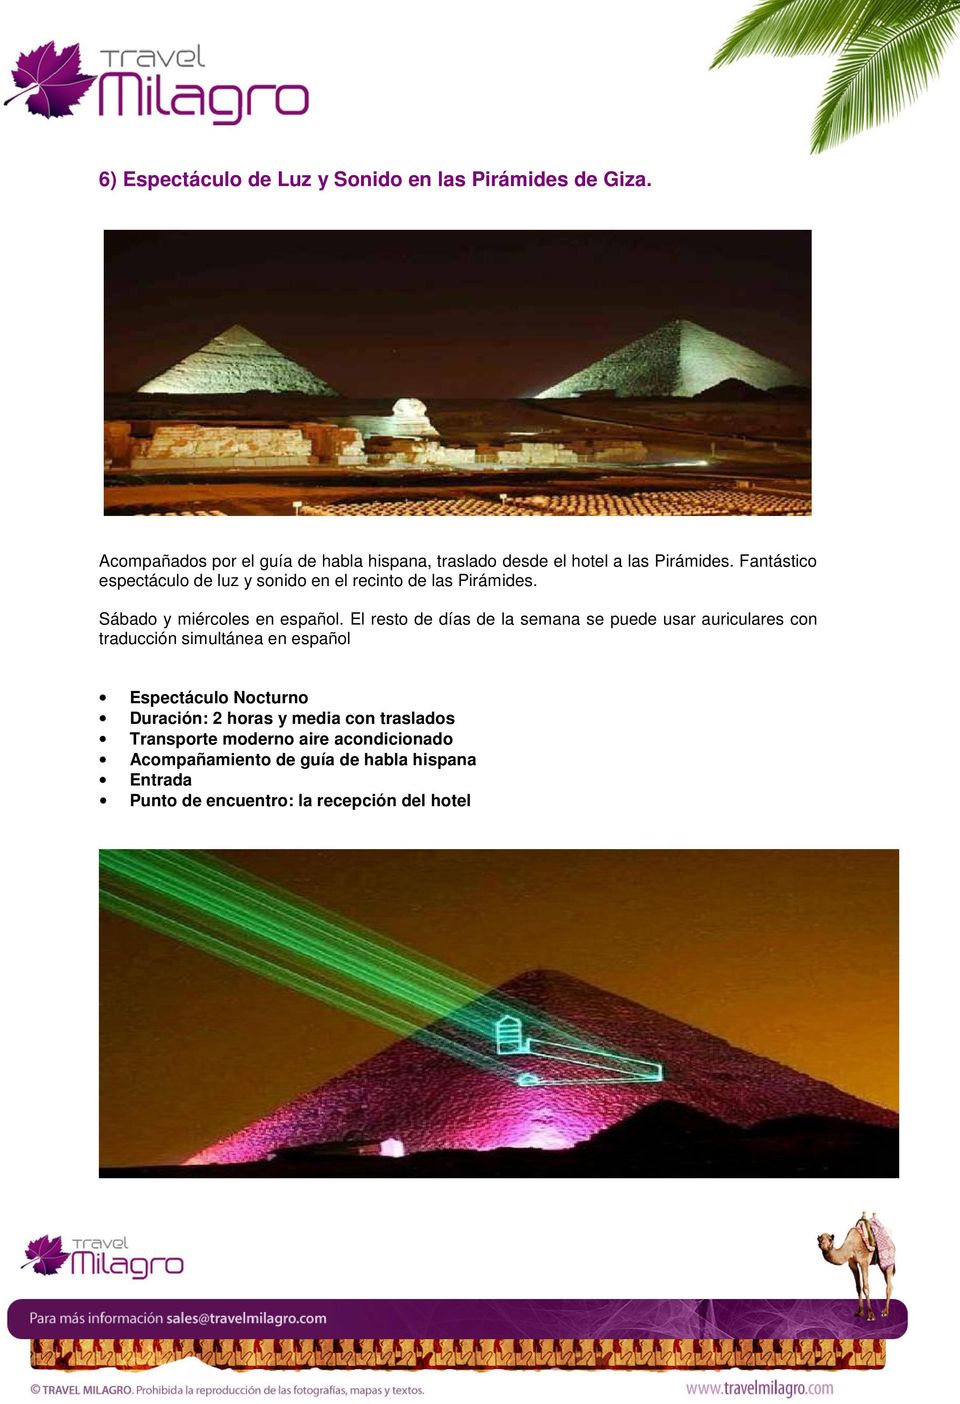 Fantástico espectáculo de luz y sonido en el recinto de las Pirámides. Sábado y miércoles en español.